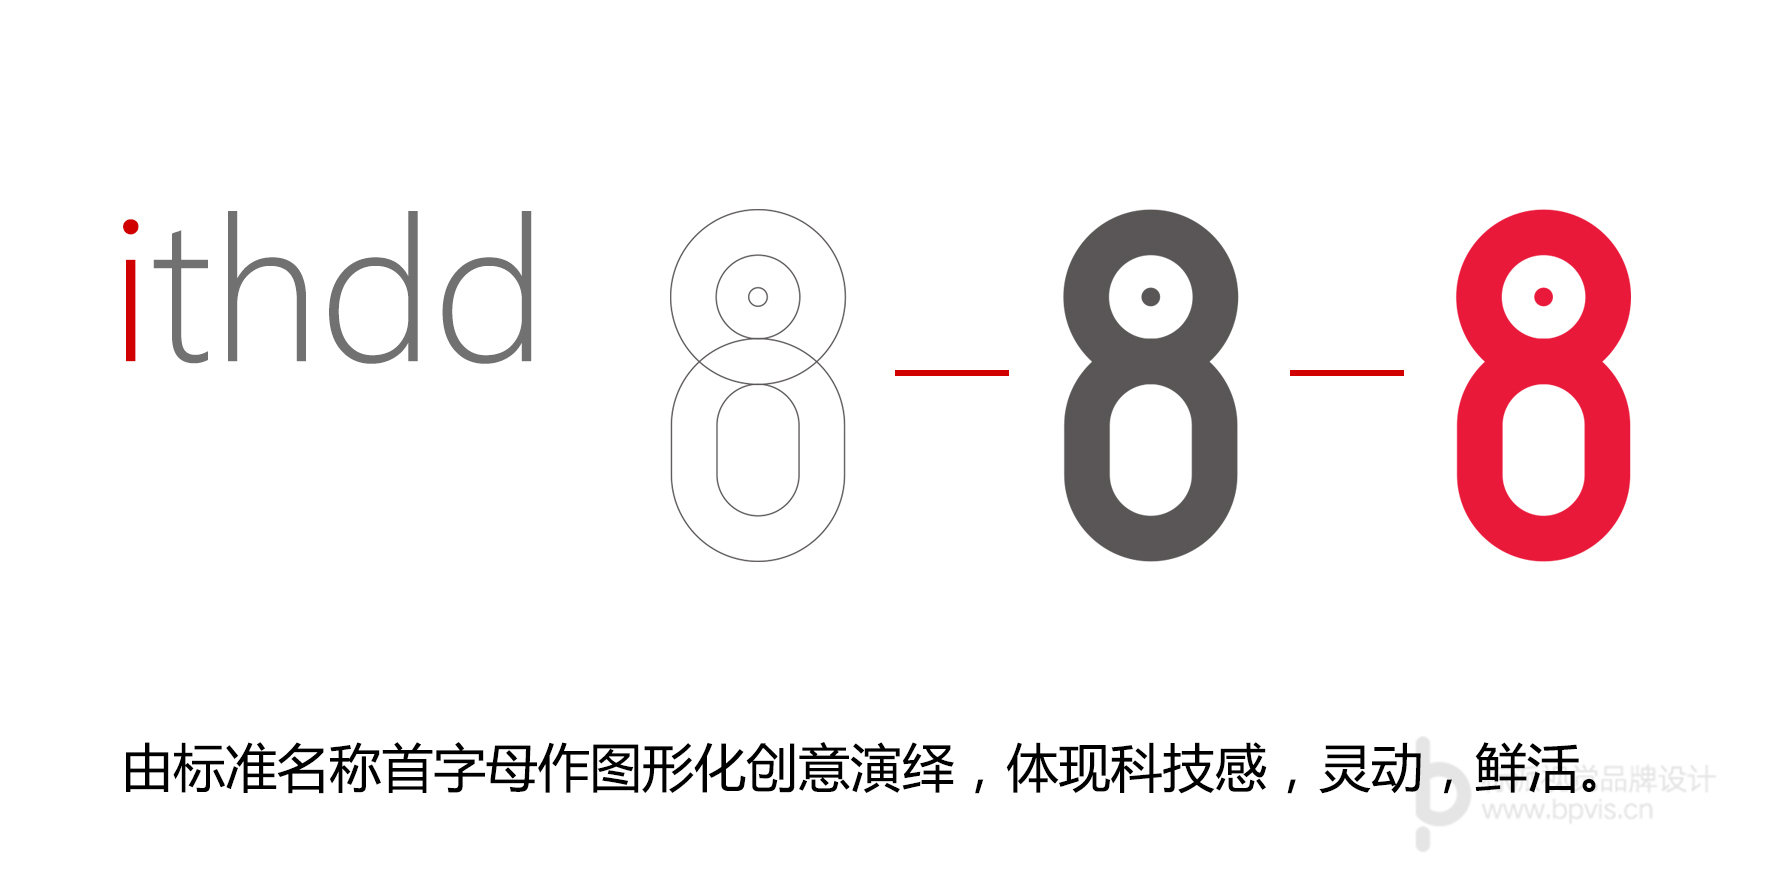 图案LOGO设计-字体标志-深圳标志设计-logo设计-标志设计 中国logo制作网-LOGO设计_商标设计_公司logo标志设计